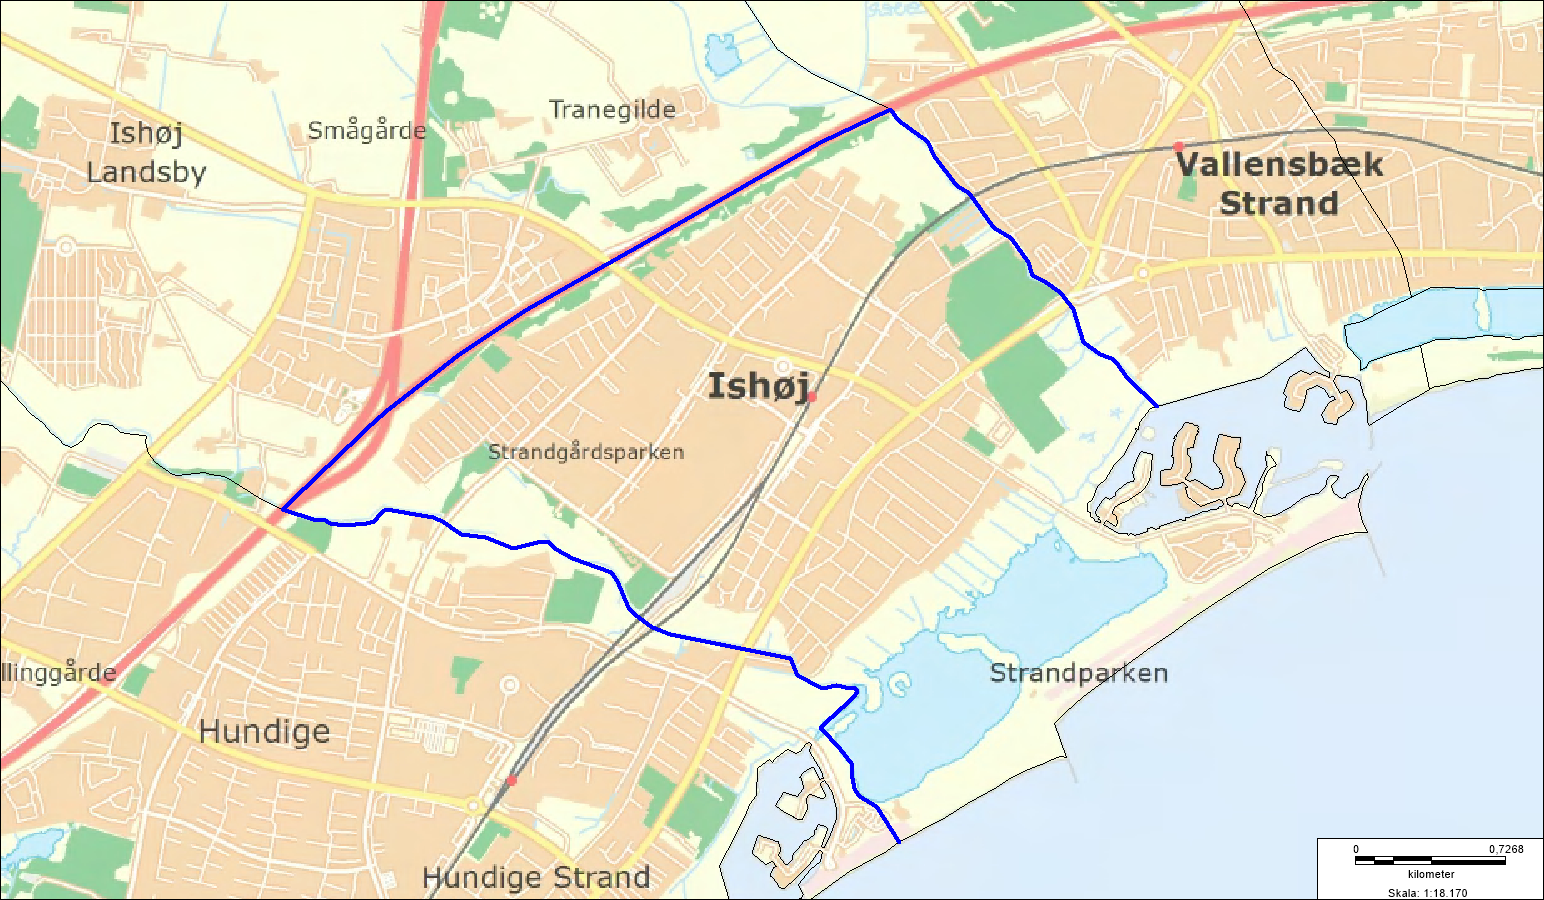 Oversigtskort over visitationszone i dele af Ishøj fra 16/9-30/9-19